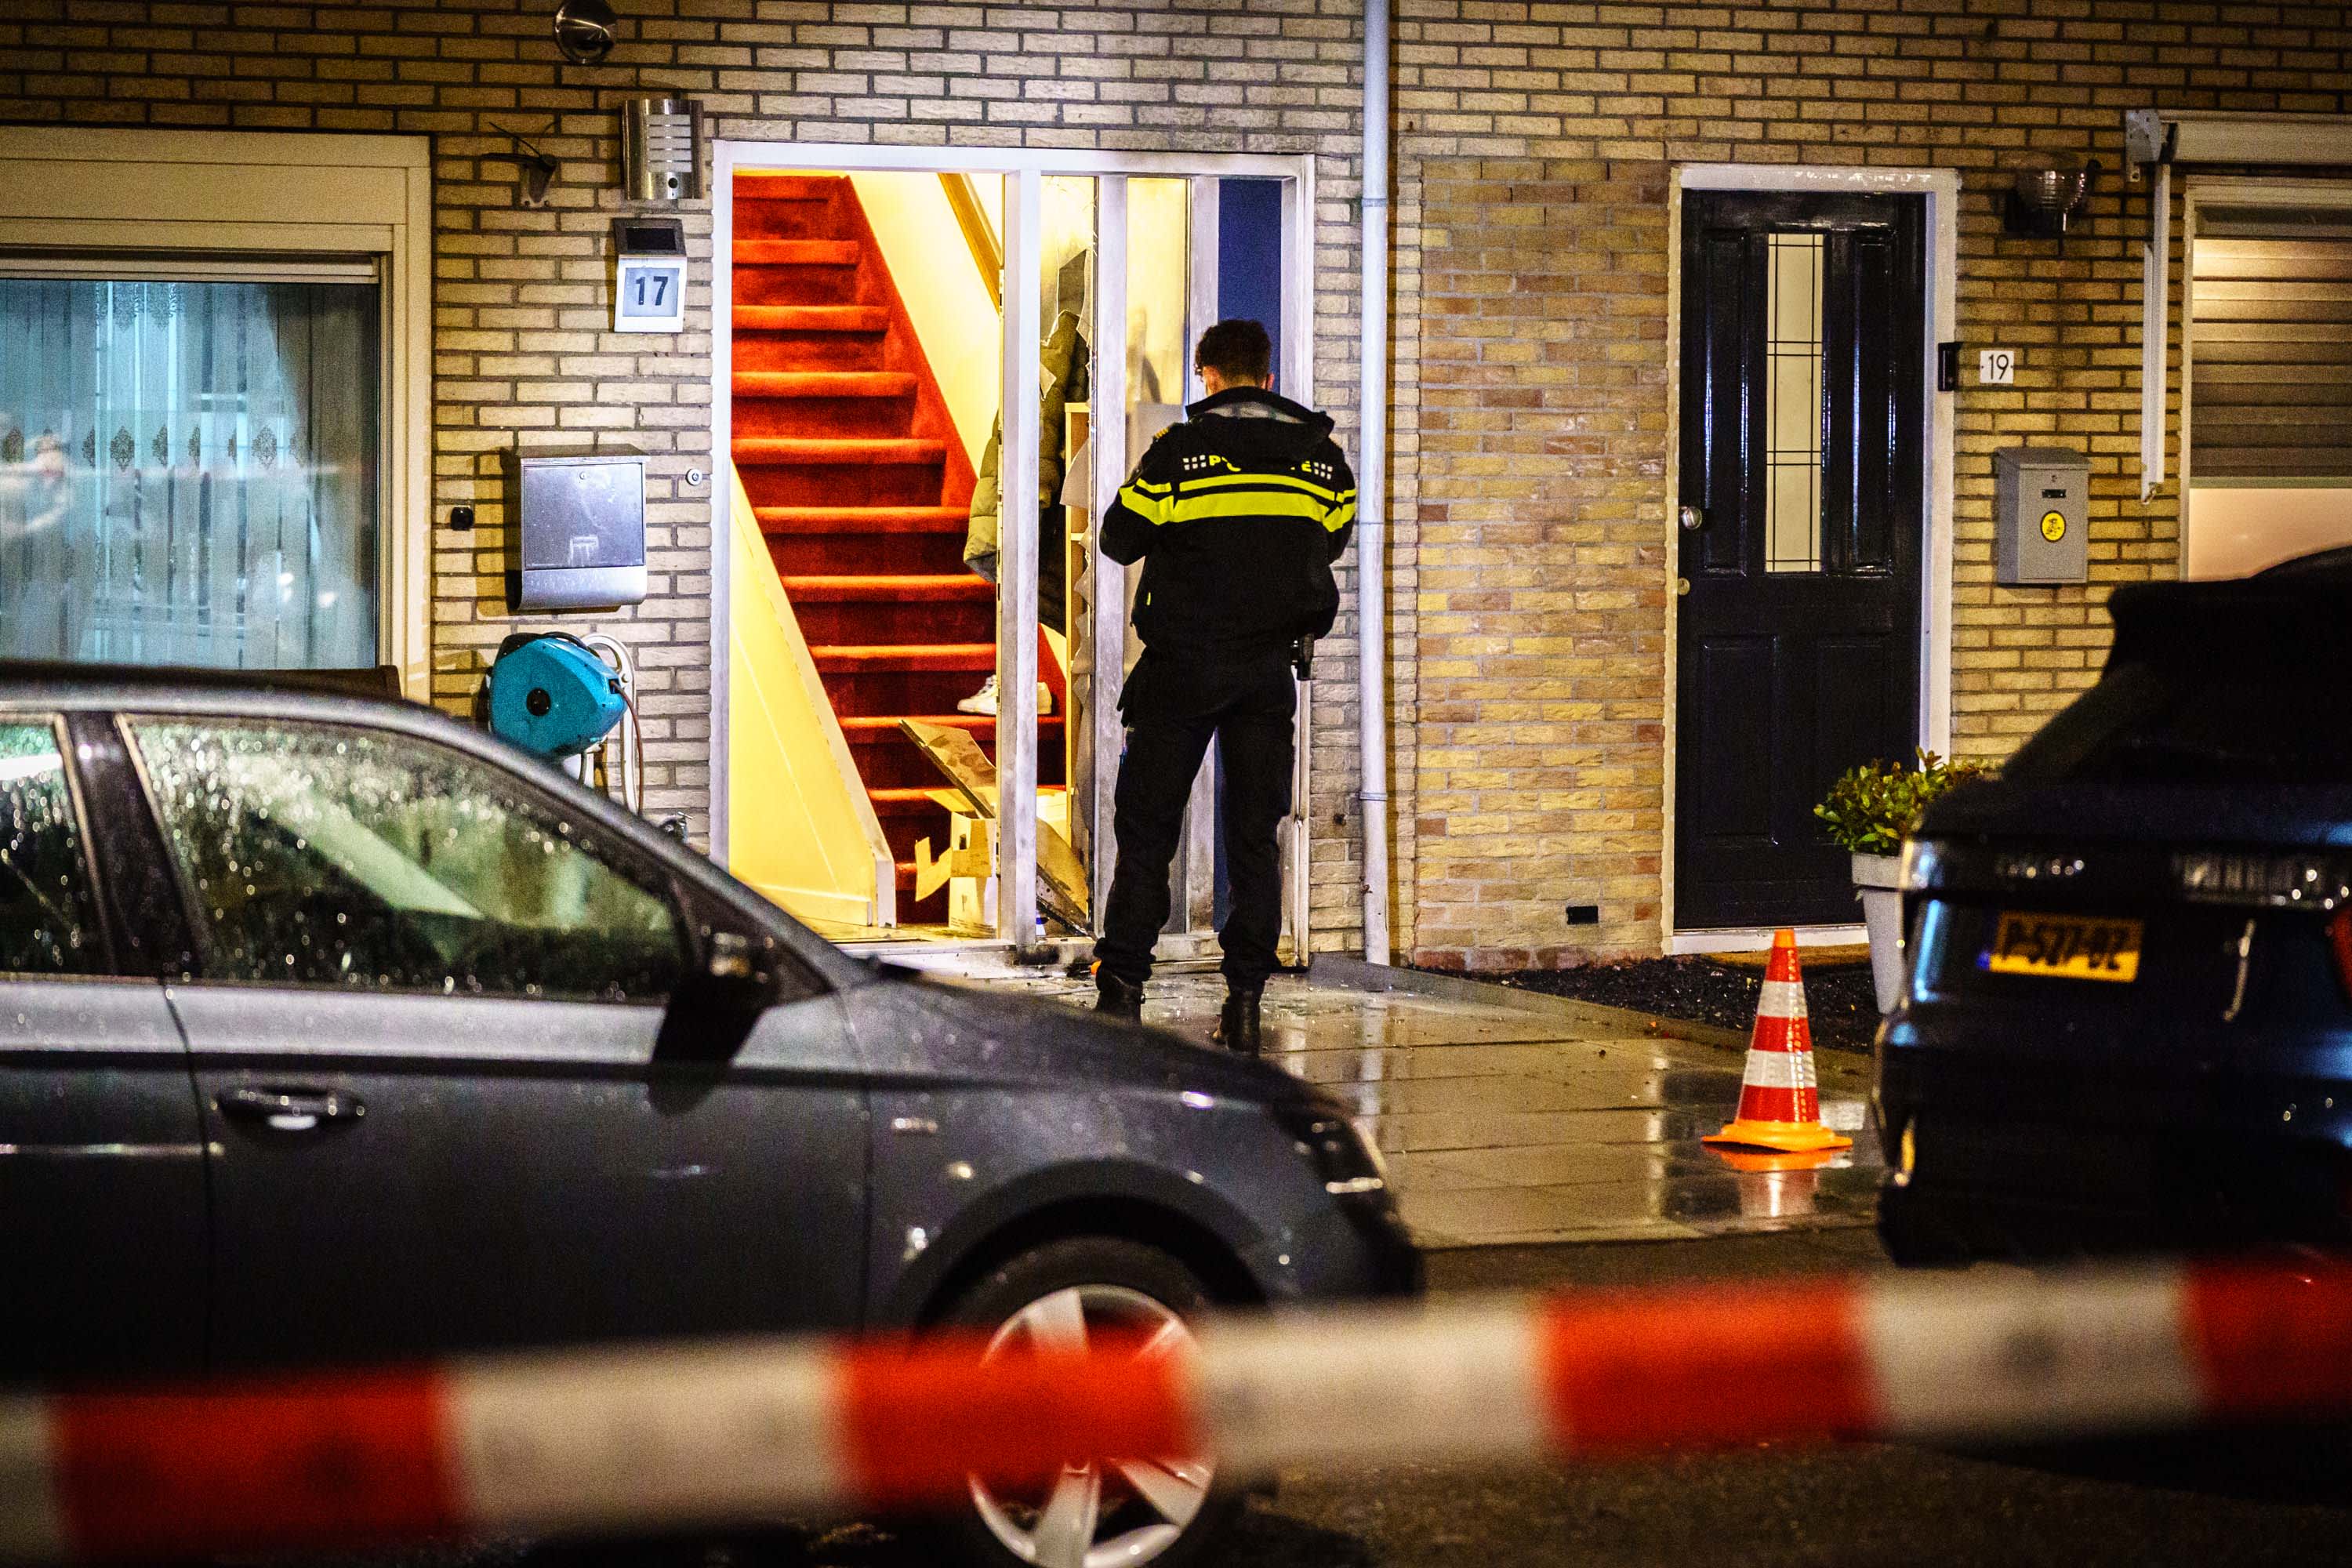 Vuurwerkbom bij woning IJsselstein, tweede explosie in de buurt op dezelfde dag